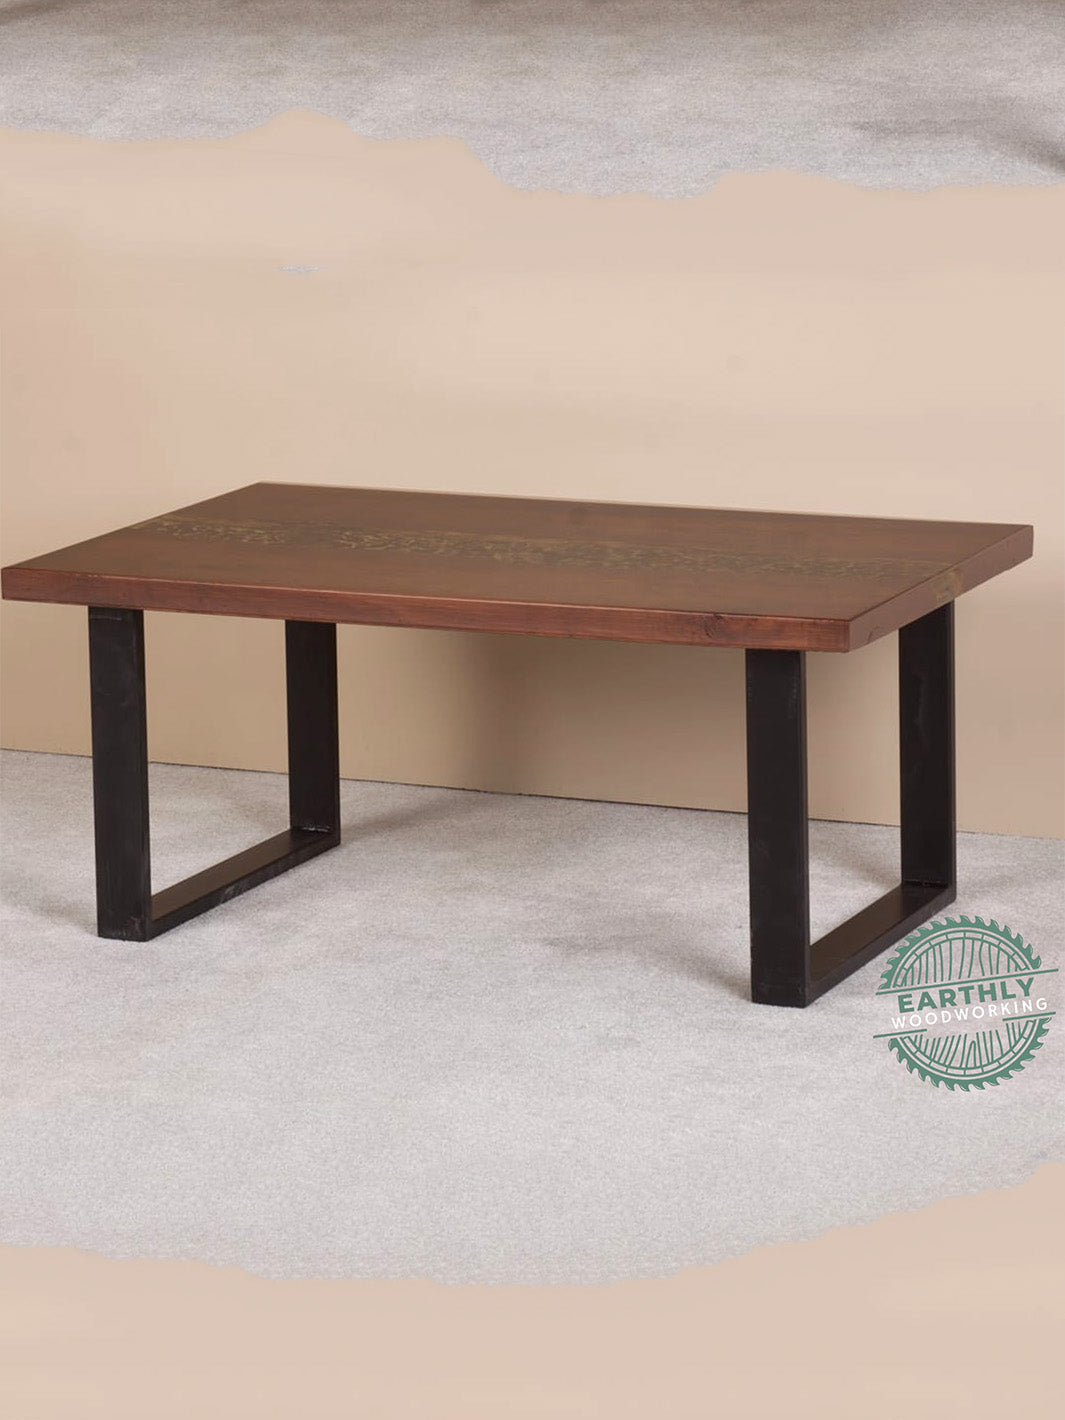 Hardwood Epoxy River Rock Coffee Table Earthly Comfort Woodworking Earthly Comfort -2